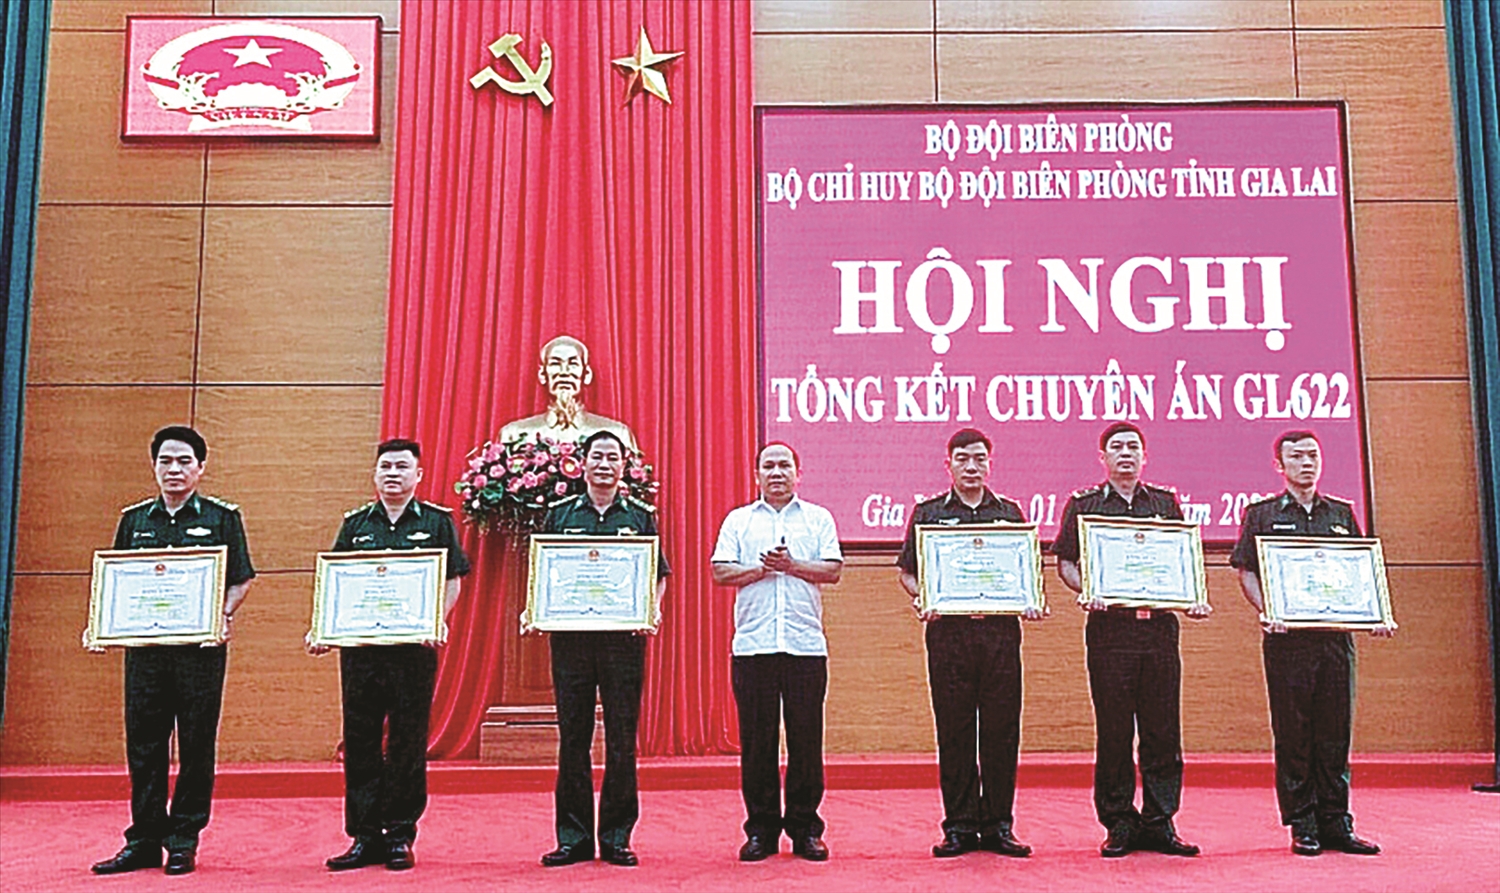 Phó Bí thư Tỉnh ủy Rah Lan Chung trao Bằng khen cho các cá nhân có thành tích xuất sắc trong thực hiện Chuyên án GL622 - chống mua bán người qua biên giới của Bộ Chỉ huy Bộ đội Biên phòng tỉnh Gia Lai.